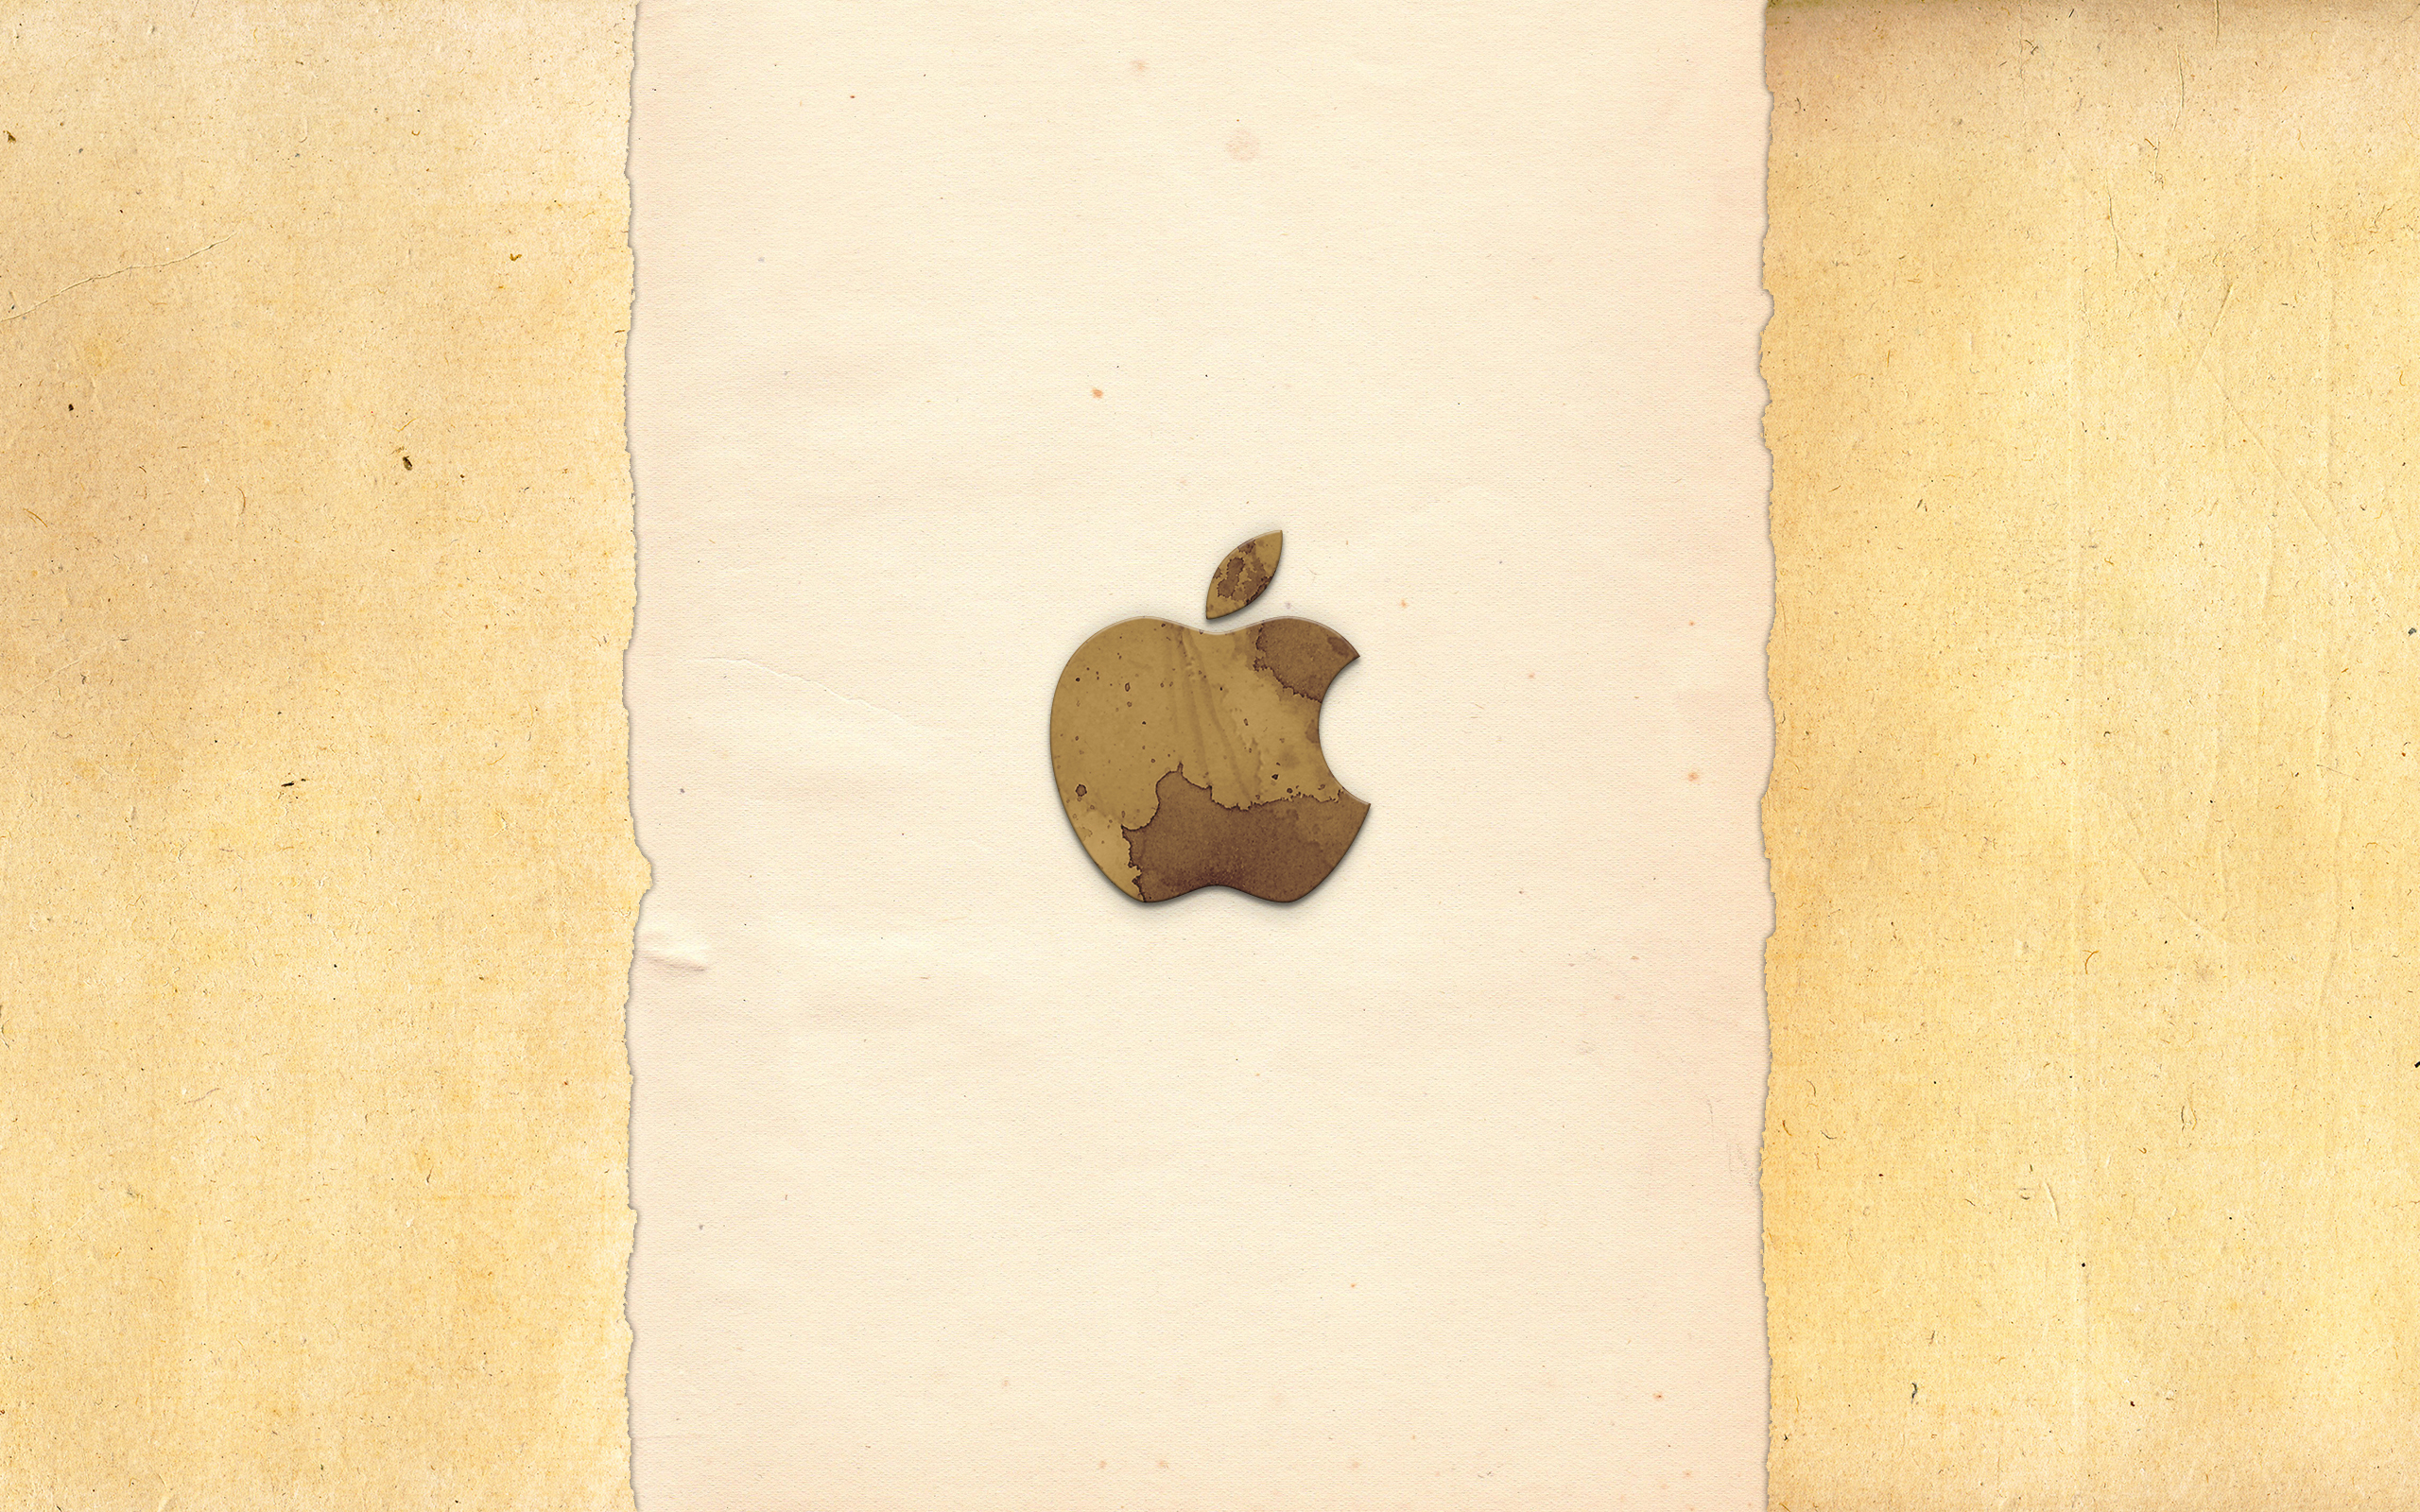 Логотип apple на стене без смс